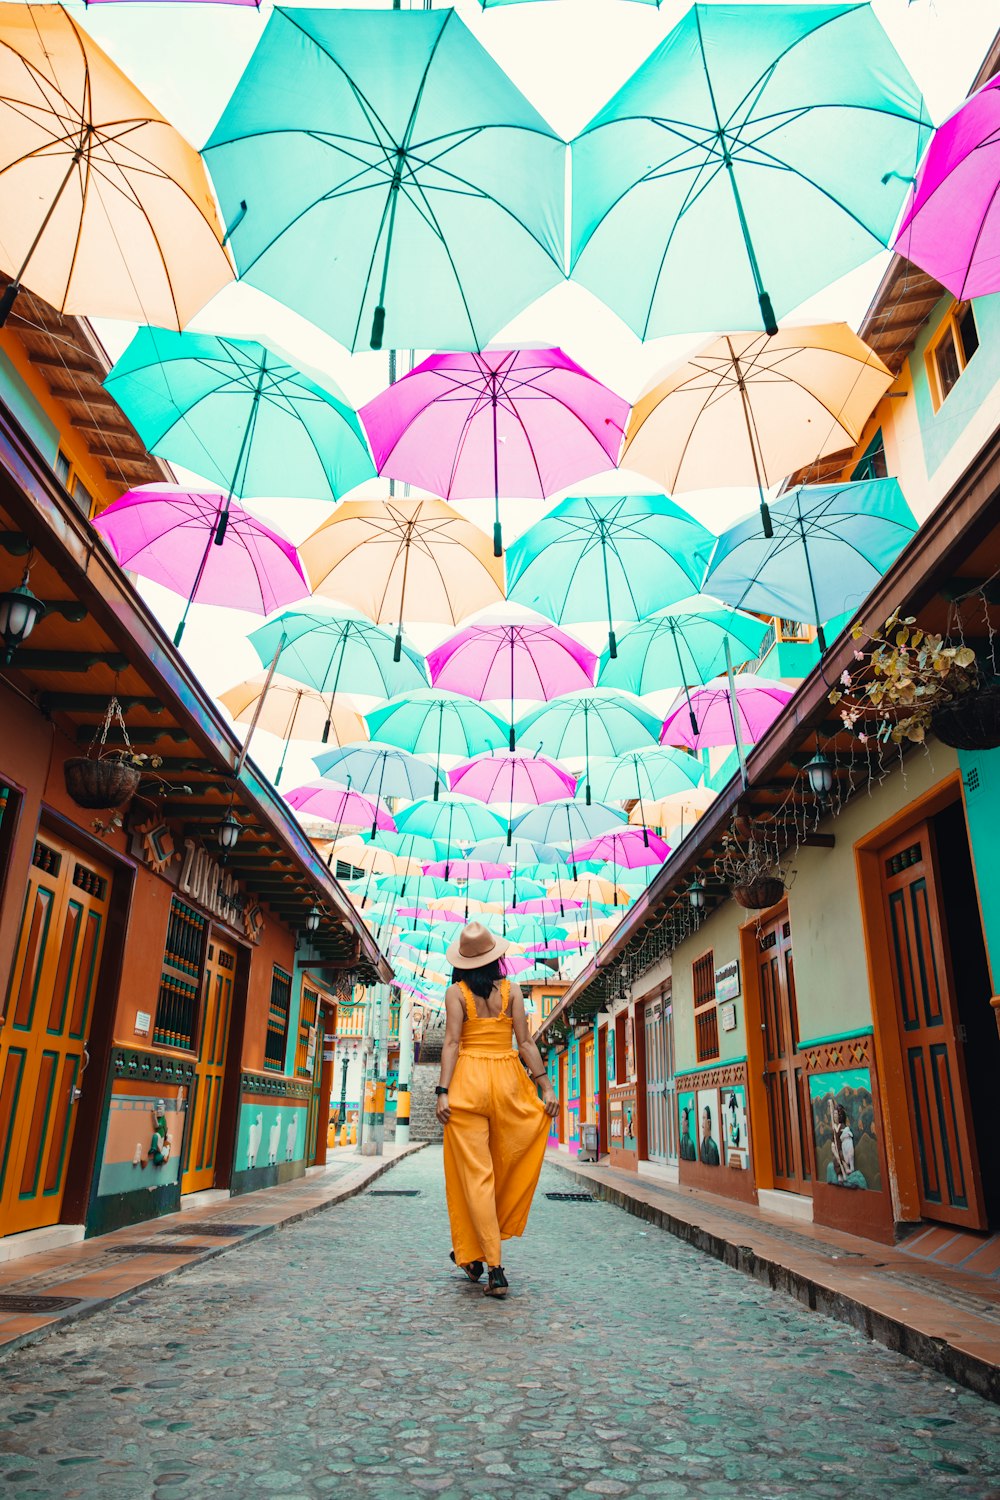 갈색 코트를 입은 여자는 낮에 거리를 걷고 있는 우산을 들고 있다